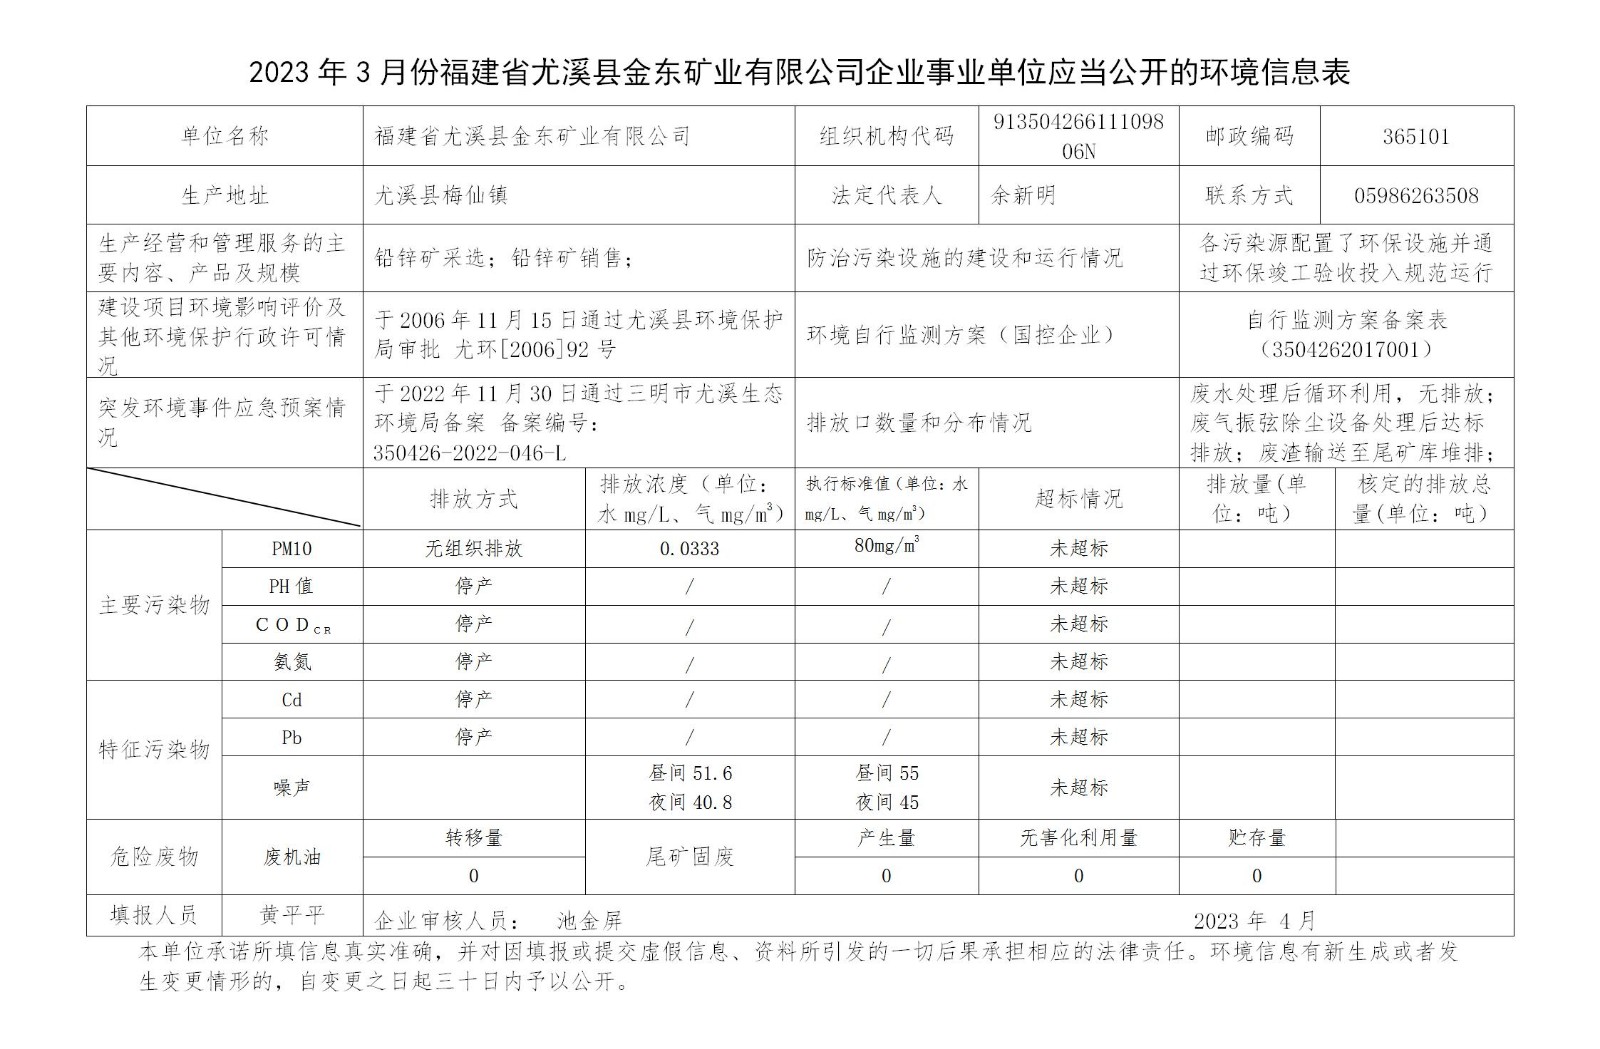 2023年3月份福建省尤溪县金东矿业有限公司企业事业单位应当公开的环境信息表_01.jpg